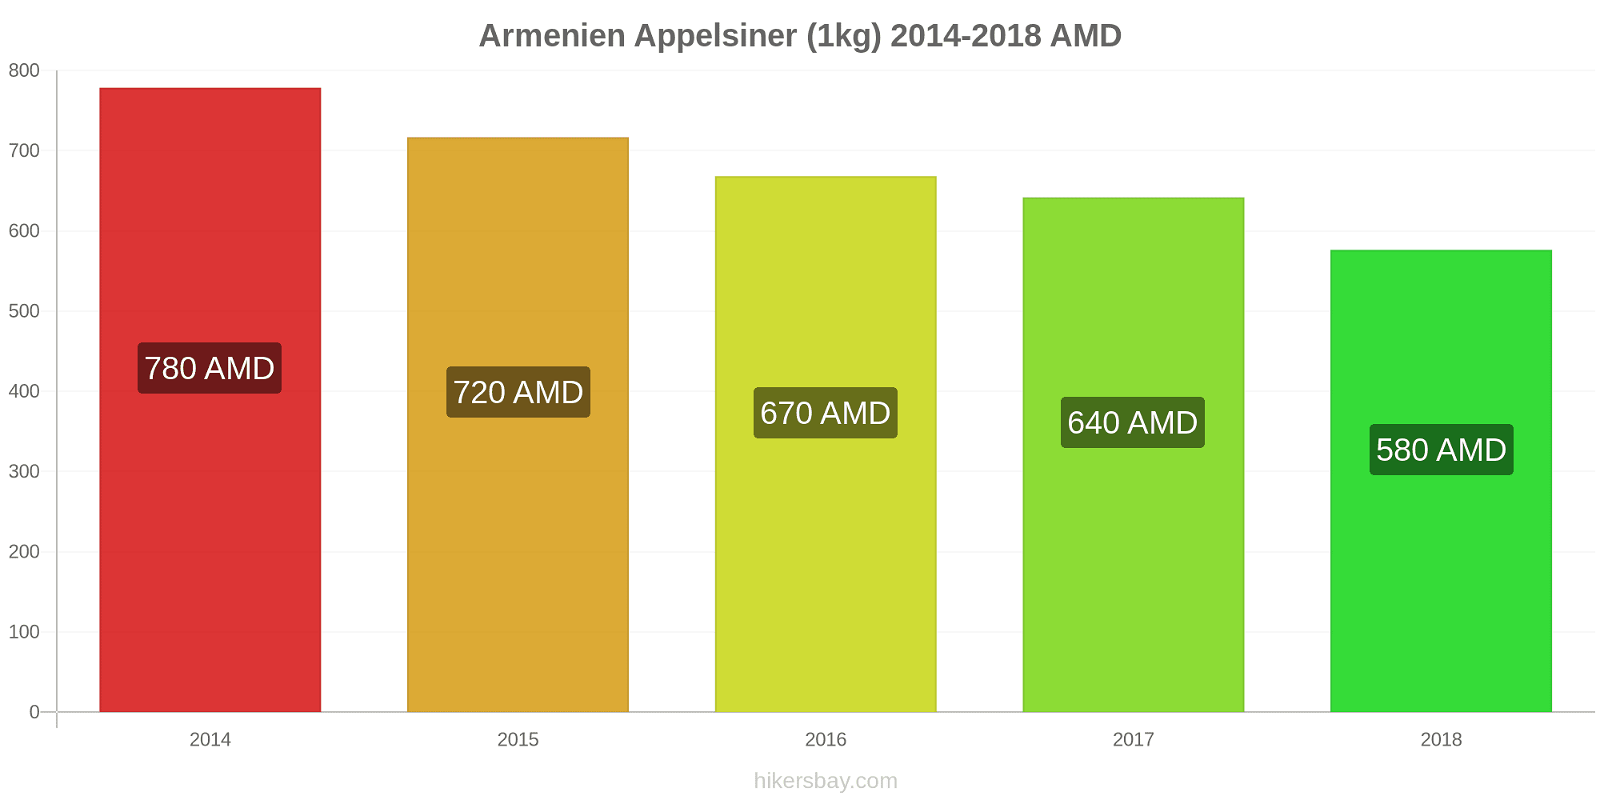 Armenien prisændringer Appelsiner (1kg) hikersbay.com